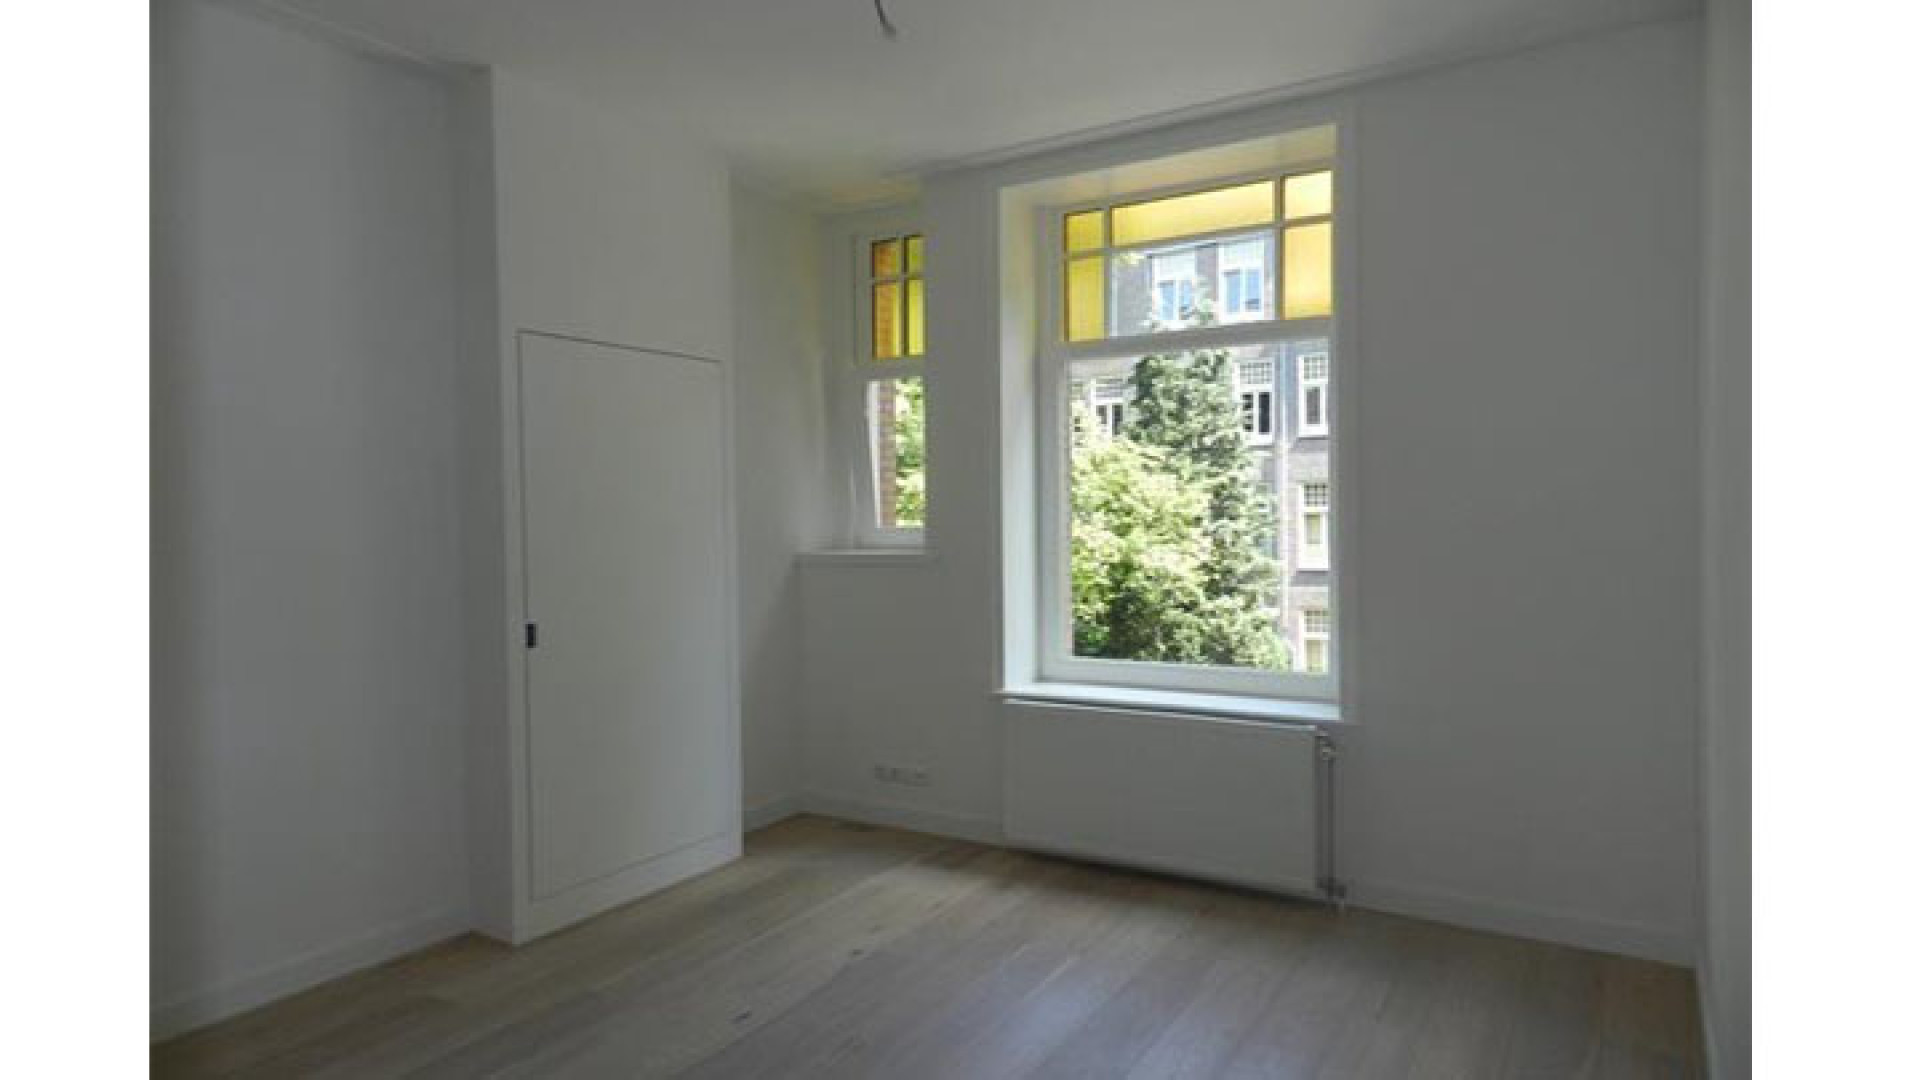 Marvin Breukhoven ruilt Haags optrekje in voor appartement in Amsterdam Oud Zuid. Zie foto's